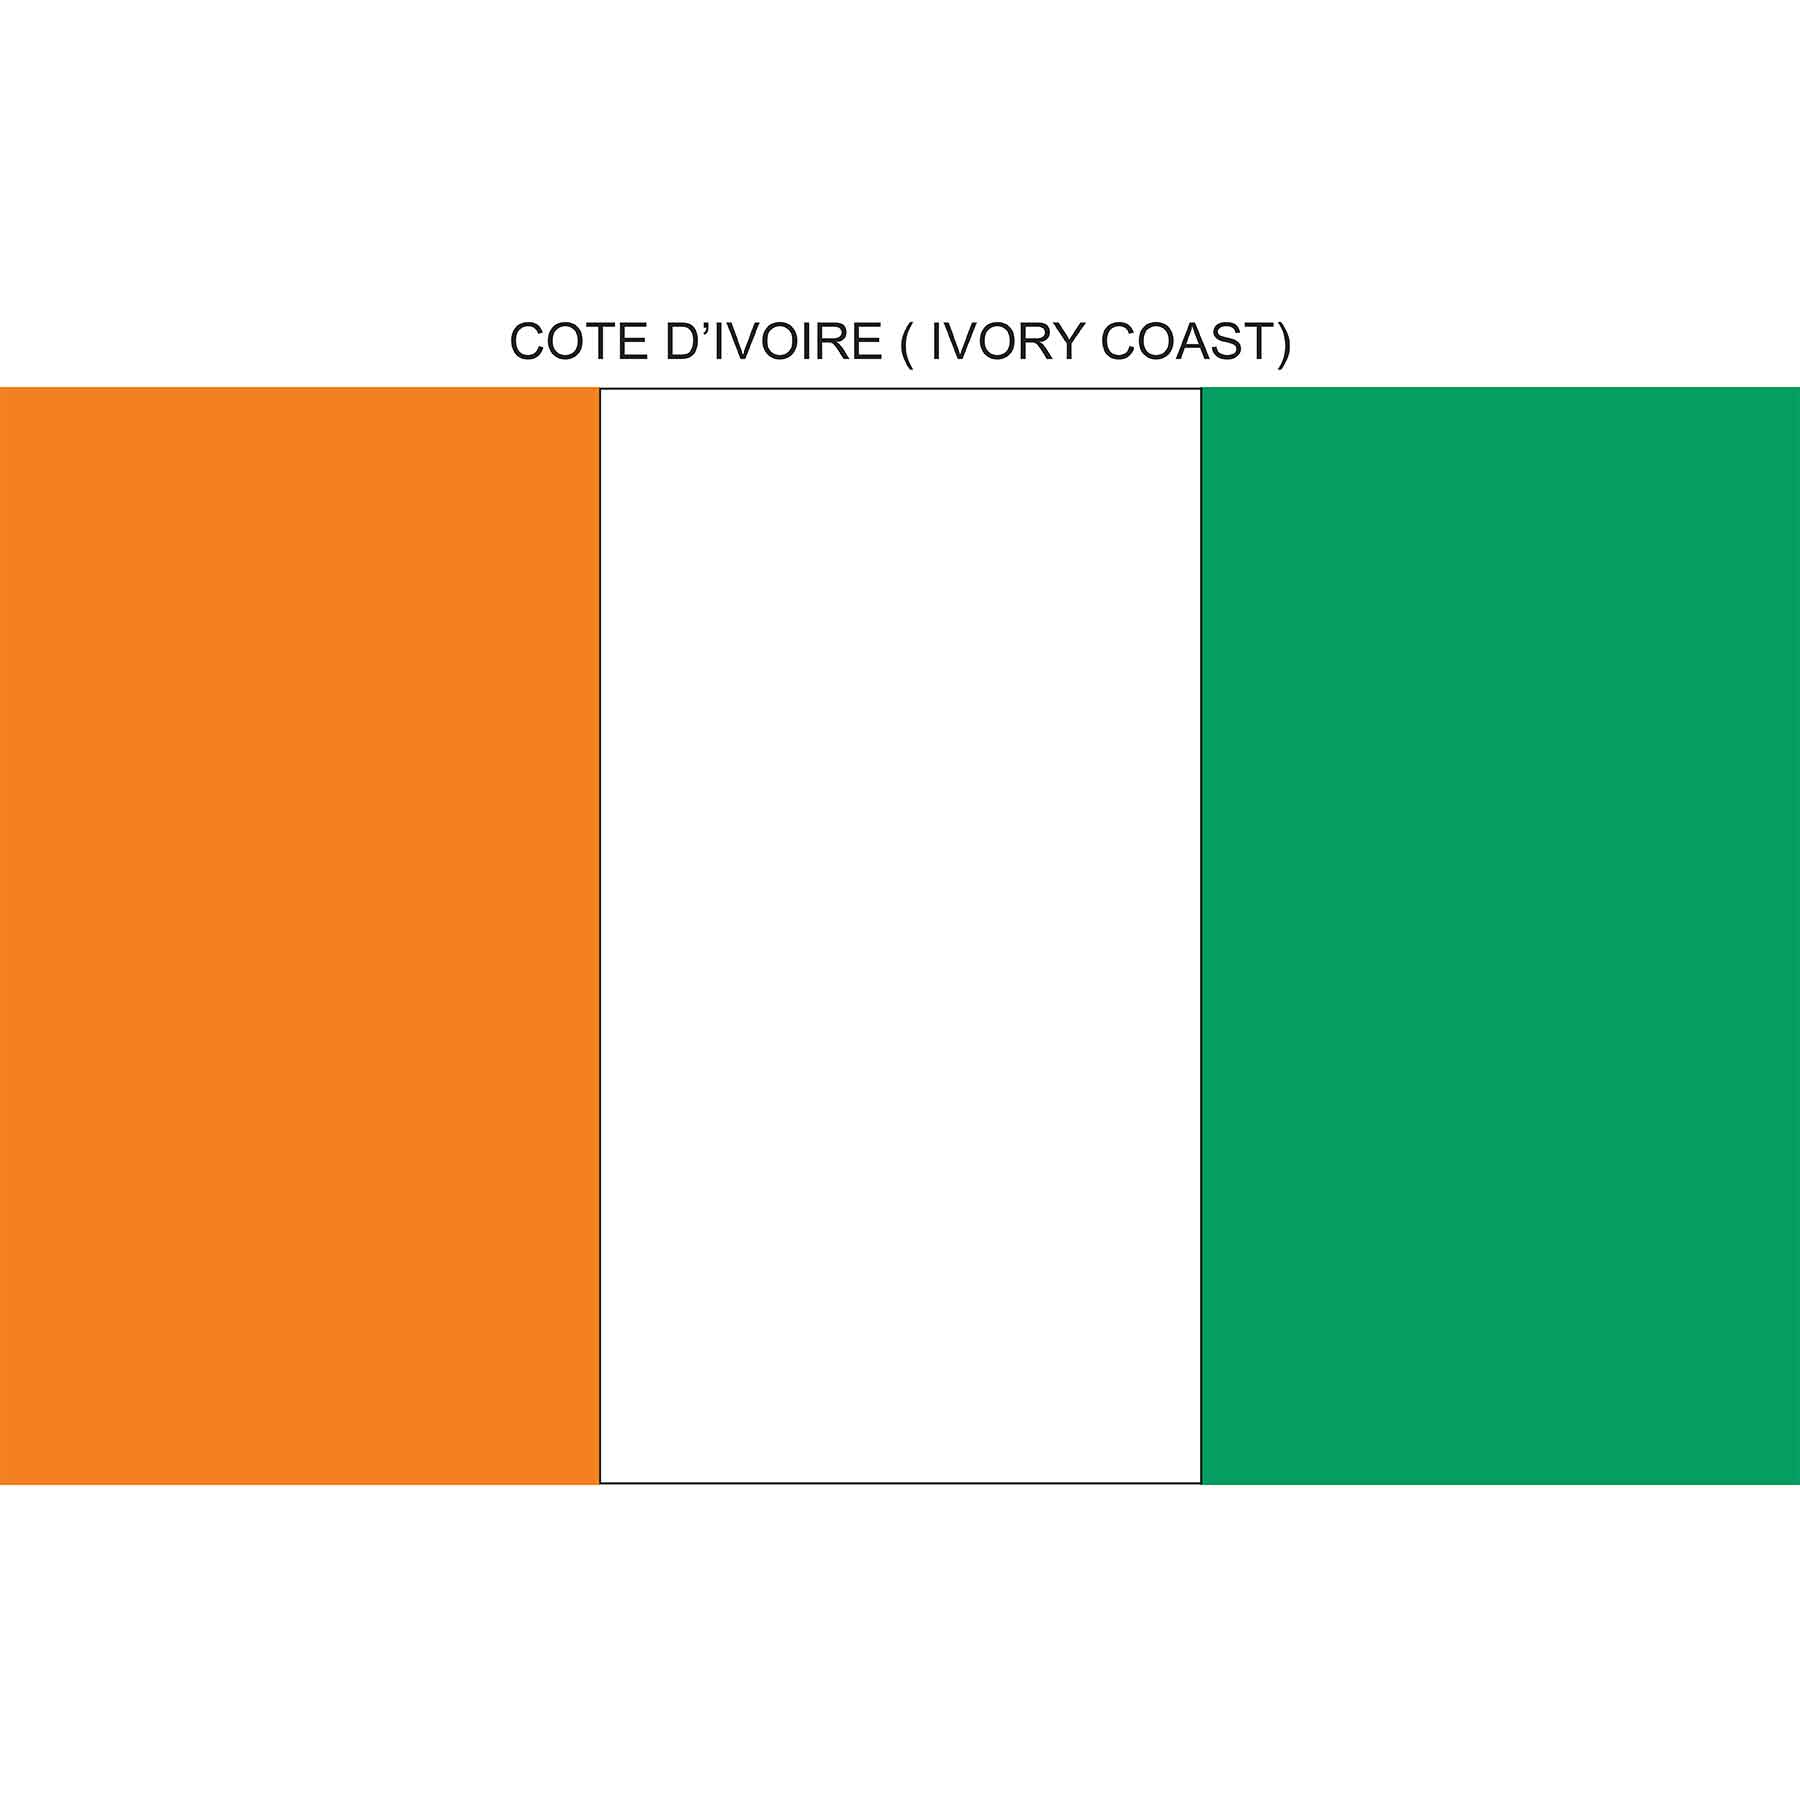 cote d'ivoire (ivory coast) flag. National flag of cote d'ivoire